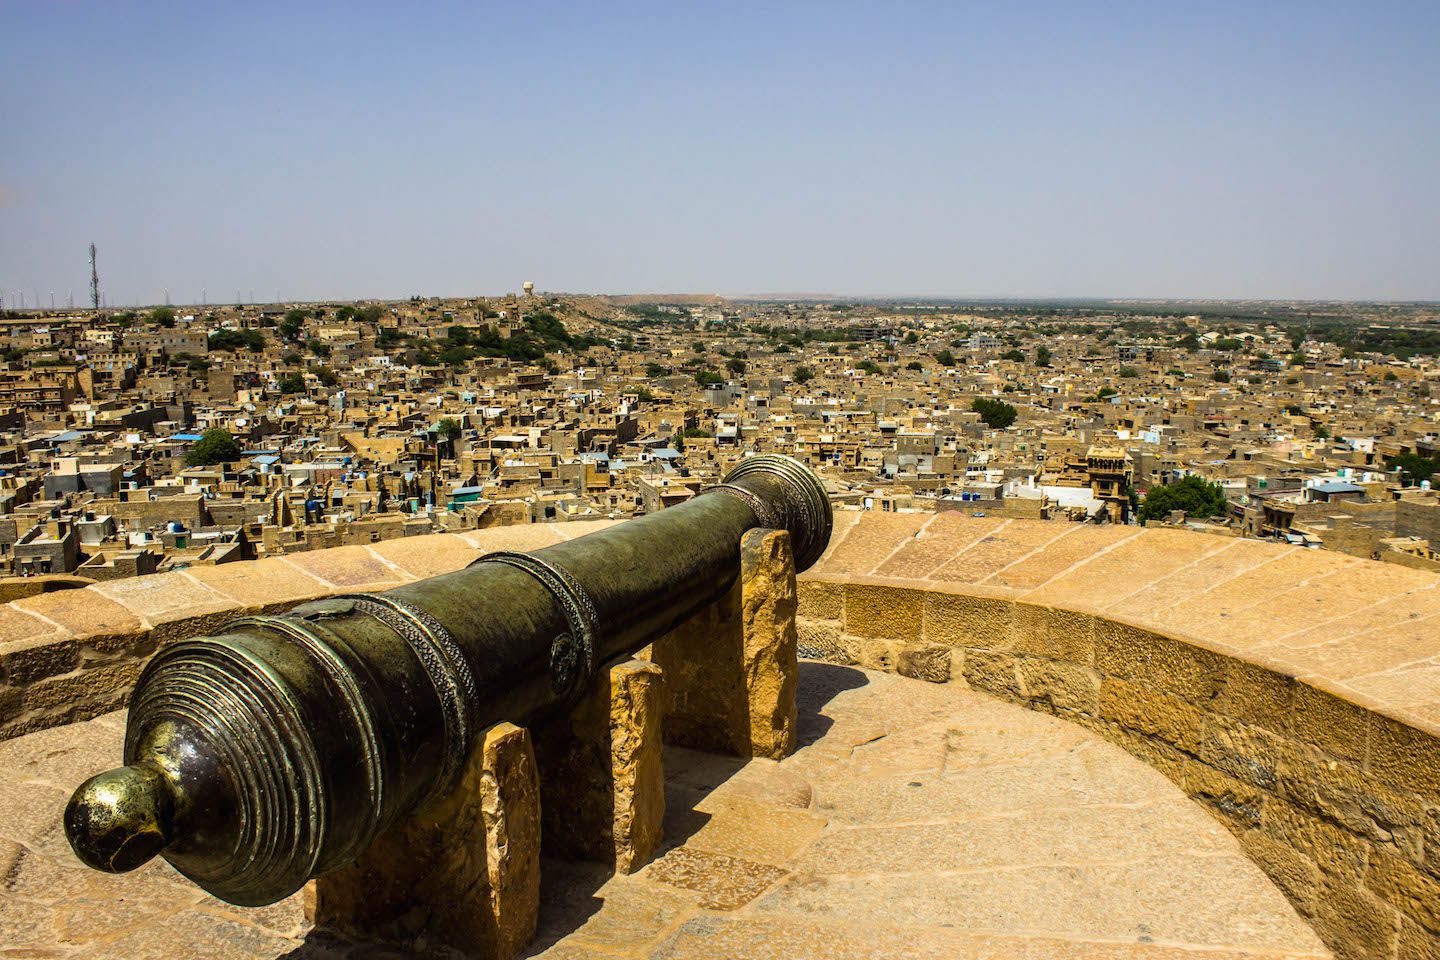 Cannon in the Jaisalmer Fort, Jaisalmer, India